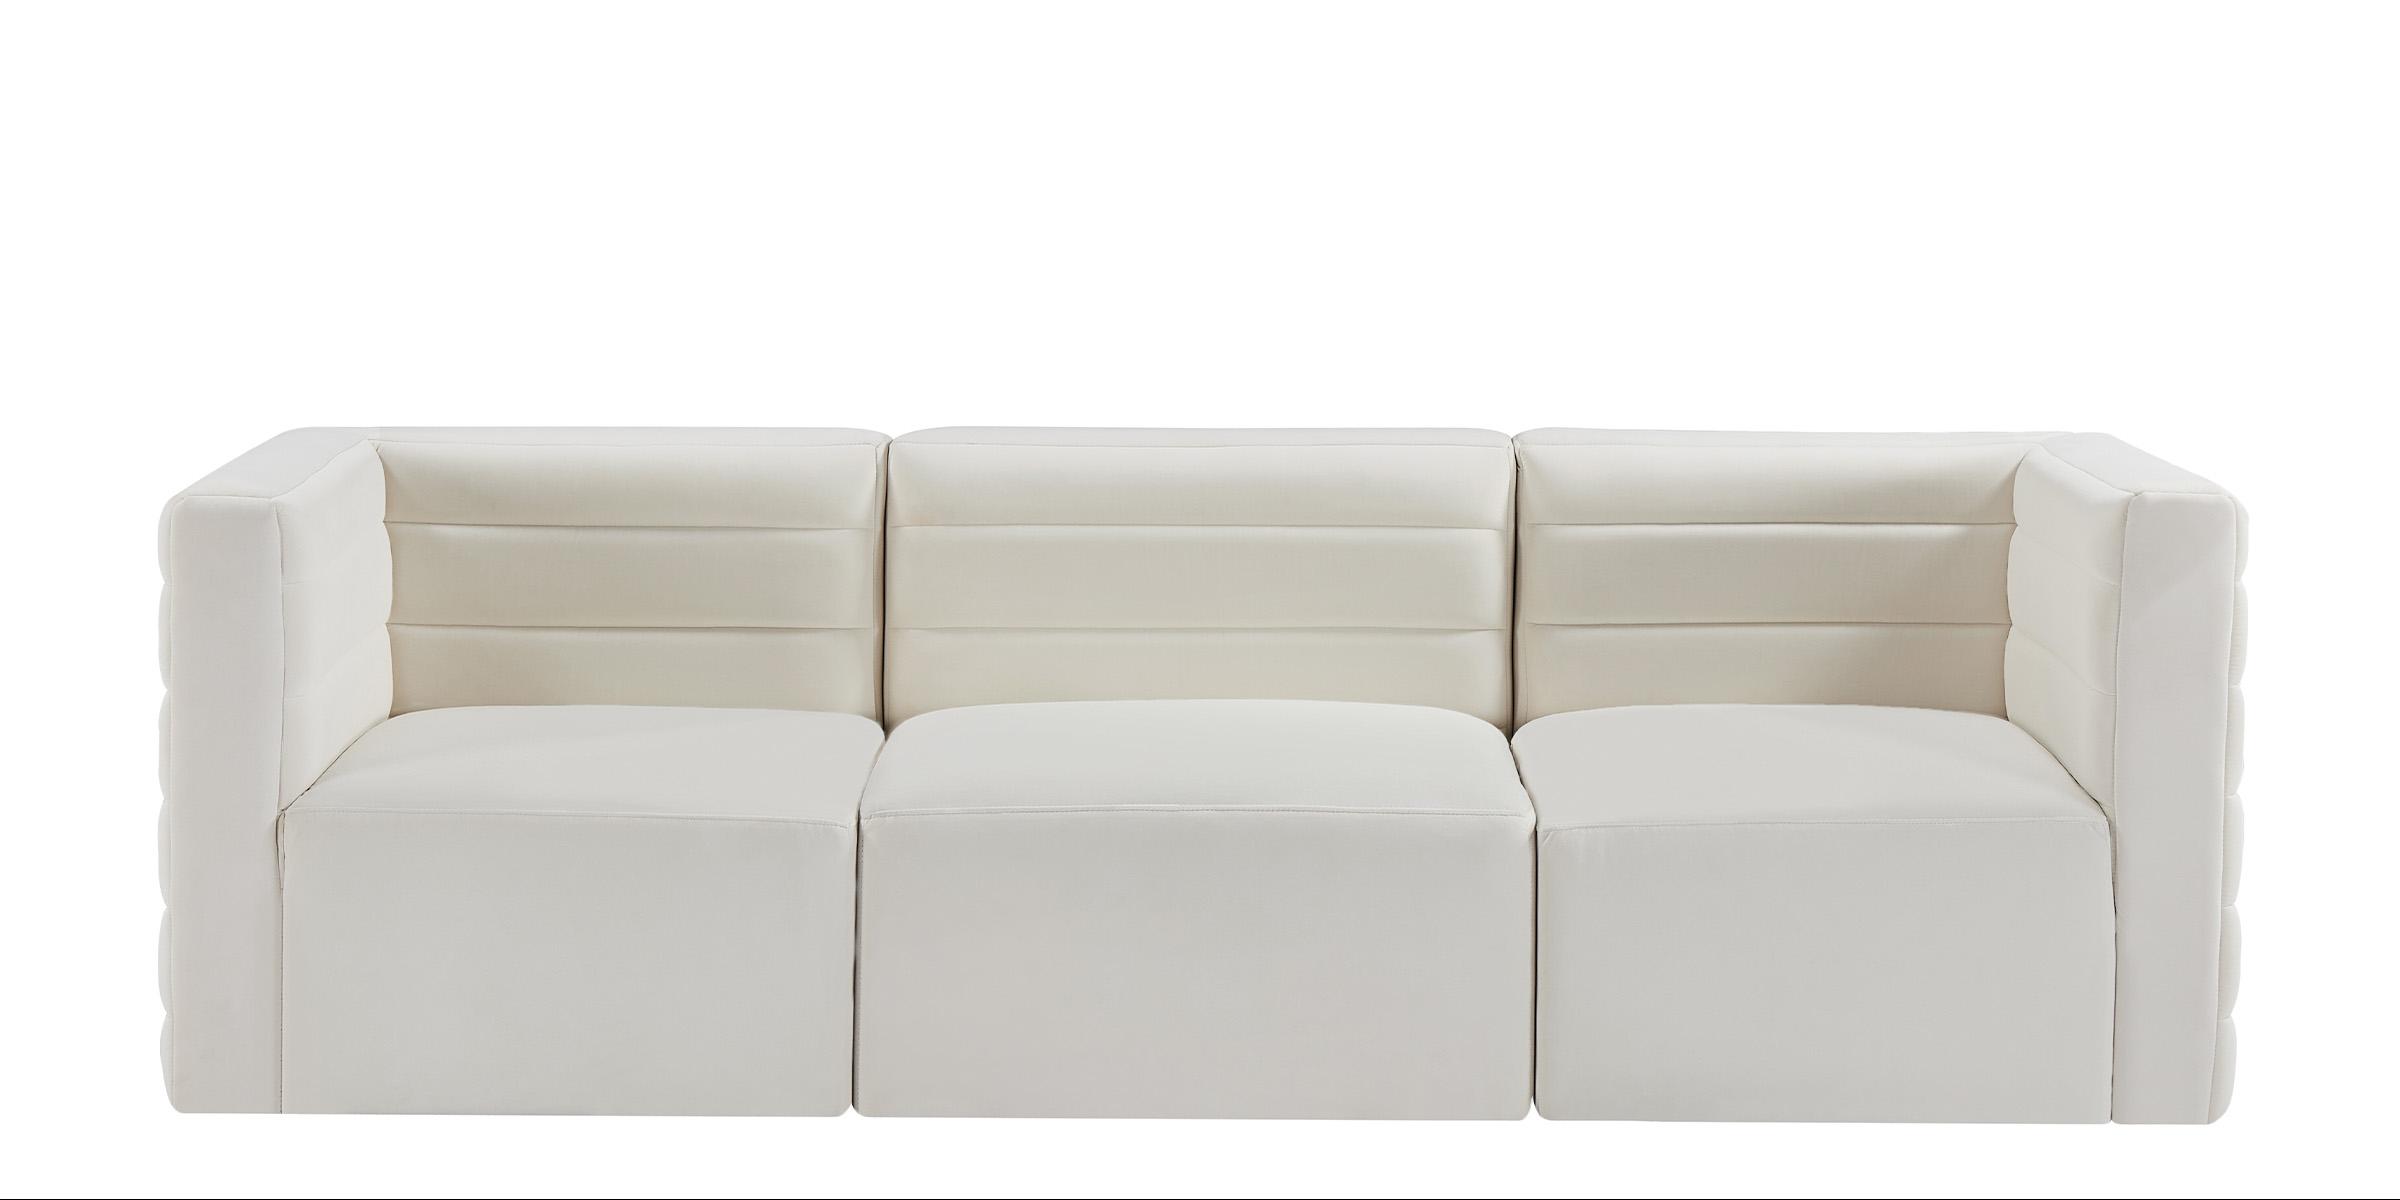 

    
Meridian Furniture Quincy 677Cream-S95 Modular Sofa Cream 677Cream-S95
